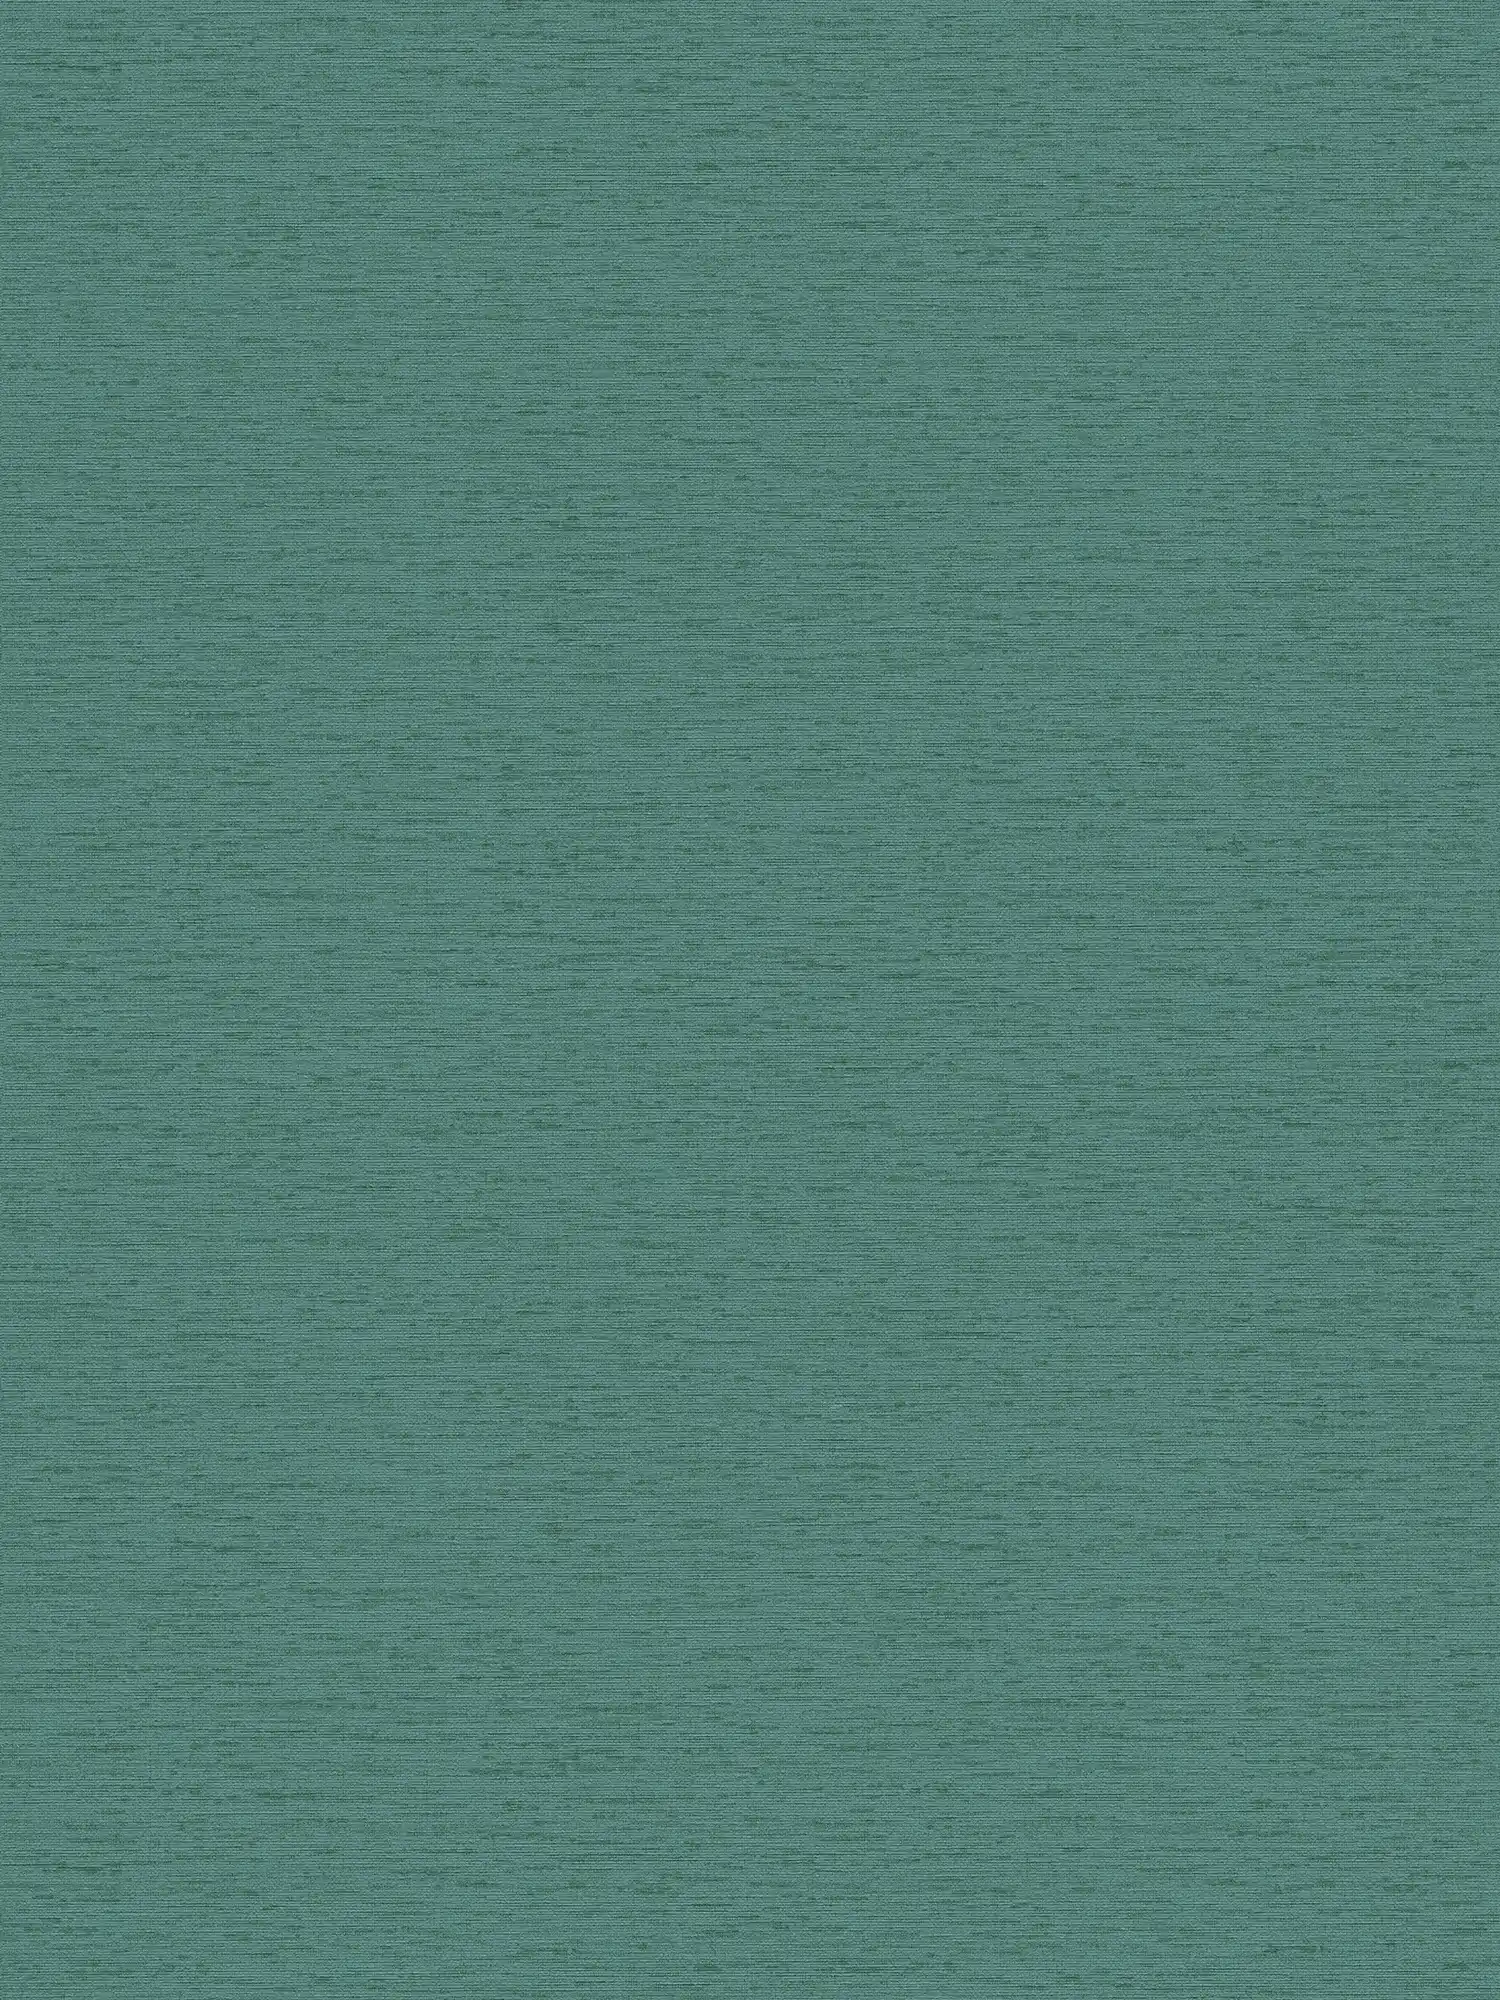 Papel pintado tejido-no tejido liso con estructura de tela, mate - petróleo, verde
